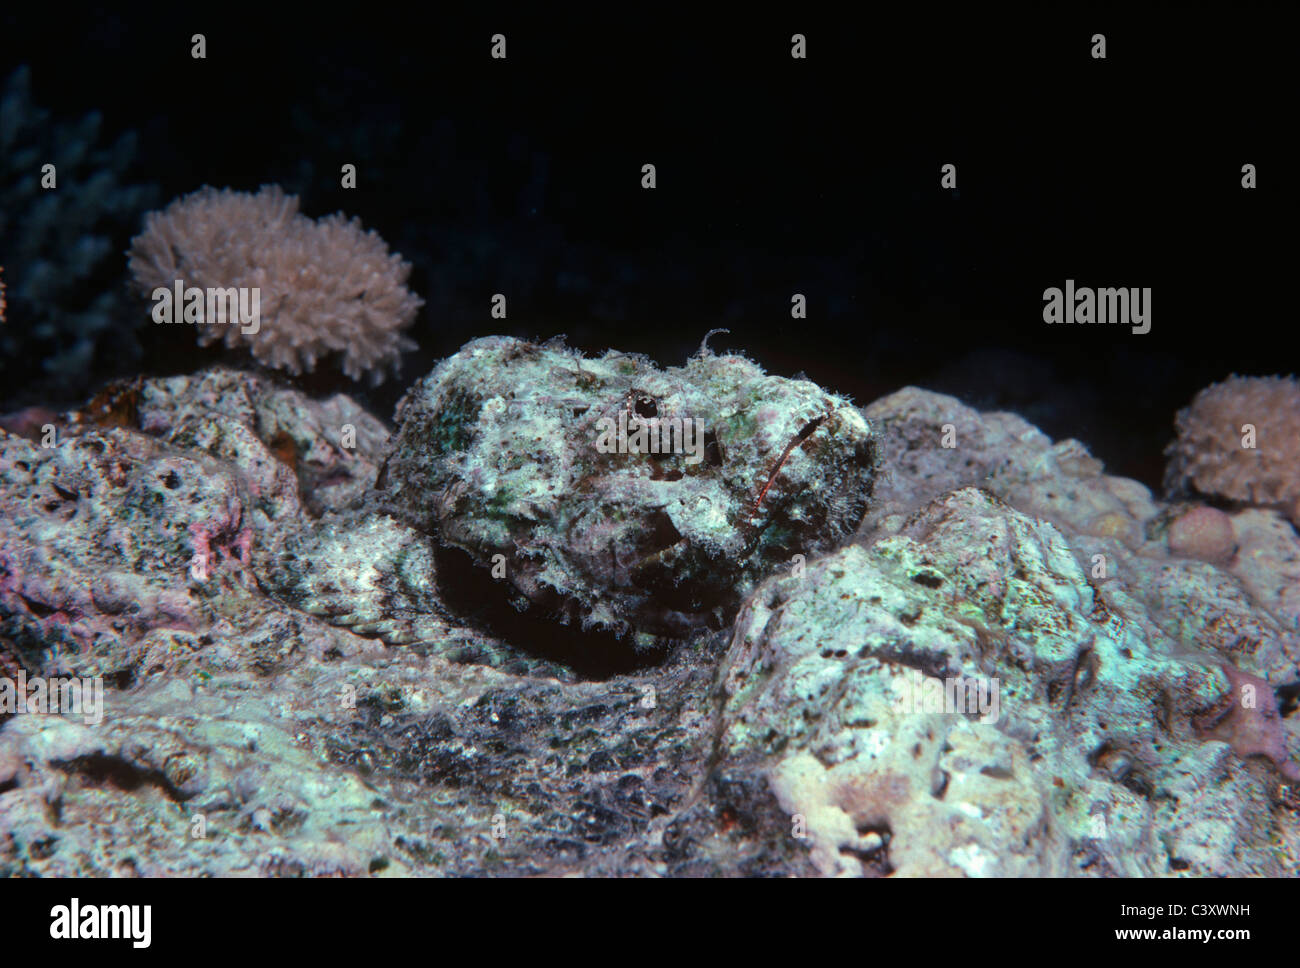 Falso pesce pietra (Scorpaenopsis diabolus) mimetizzata sulla barriera corallina bed. Egitto, Mar Rosso. Foto Stock